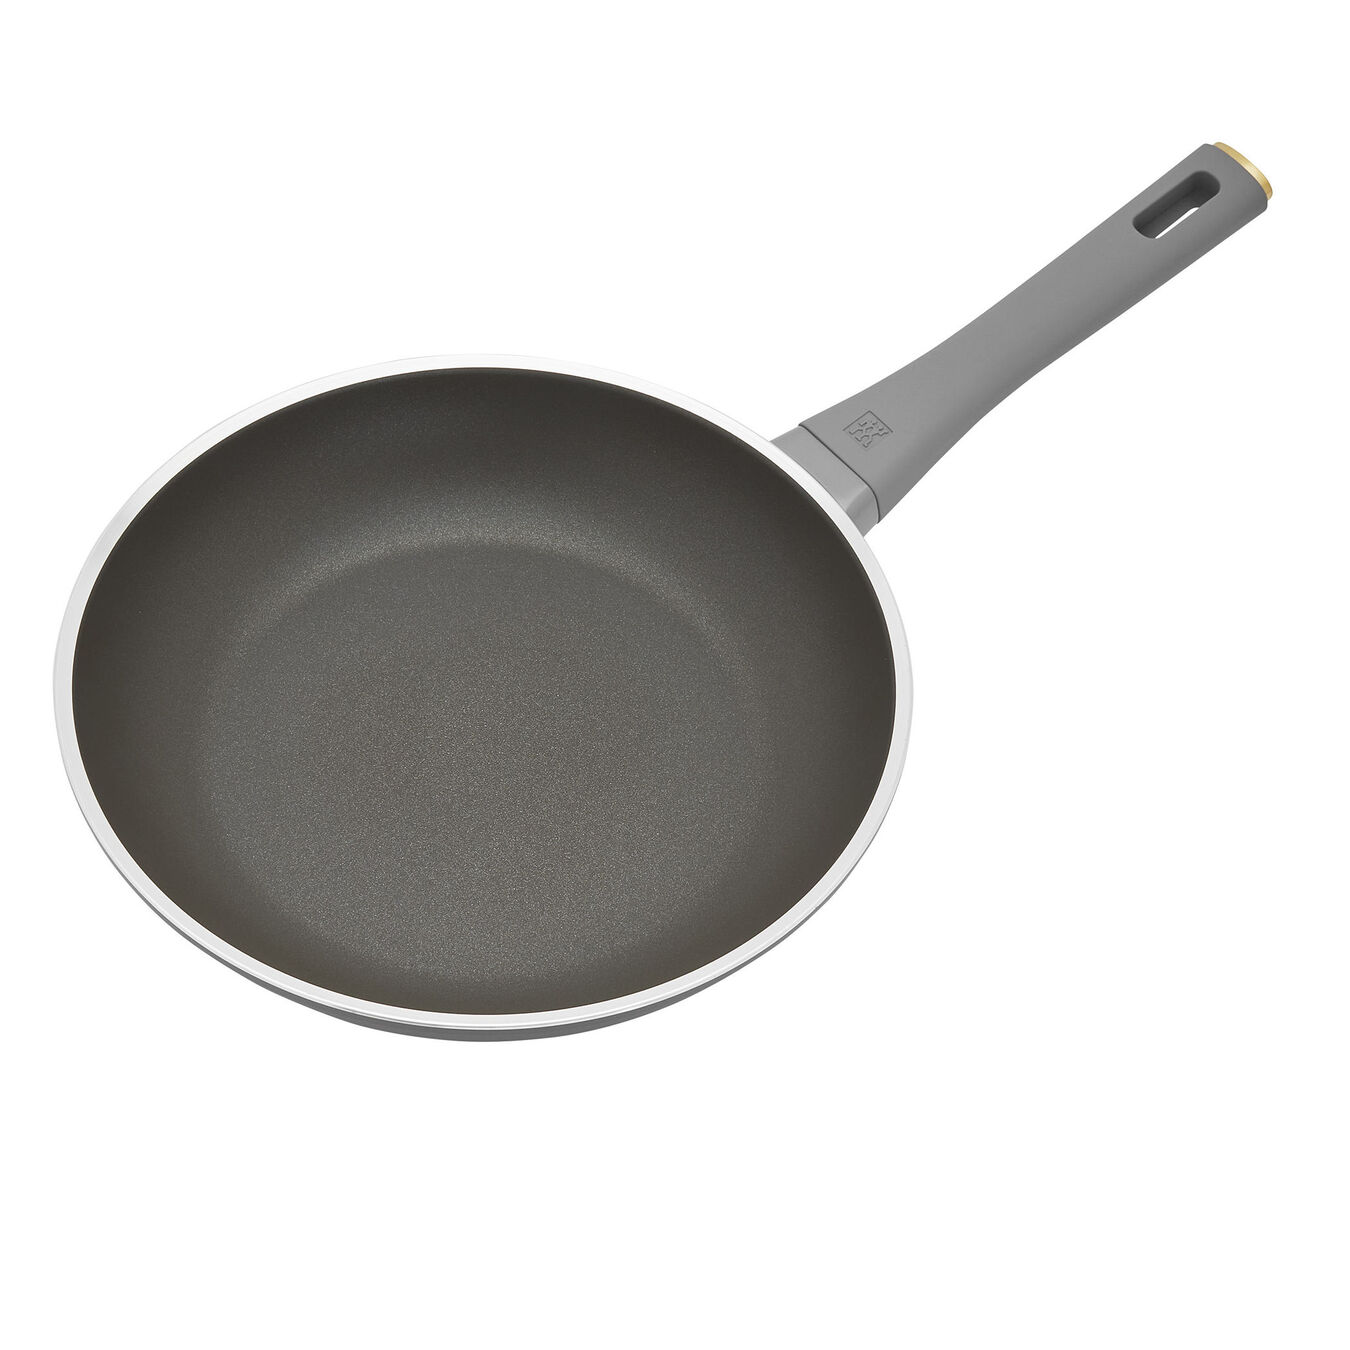 26 cm / 10 inch aluminium Frying pan,,large 2